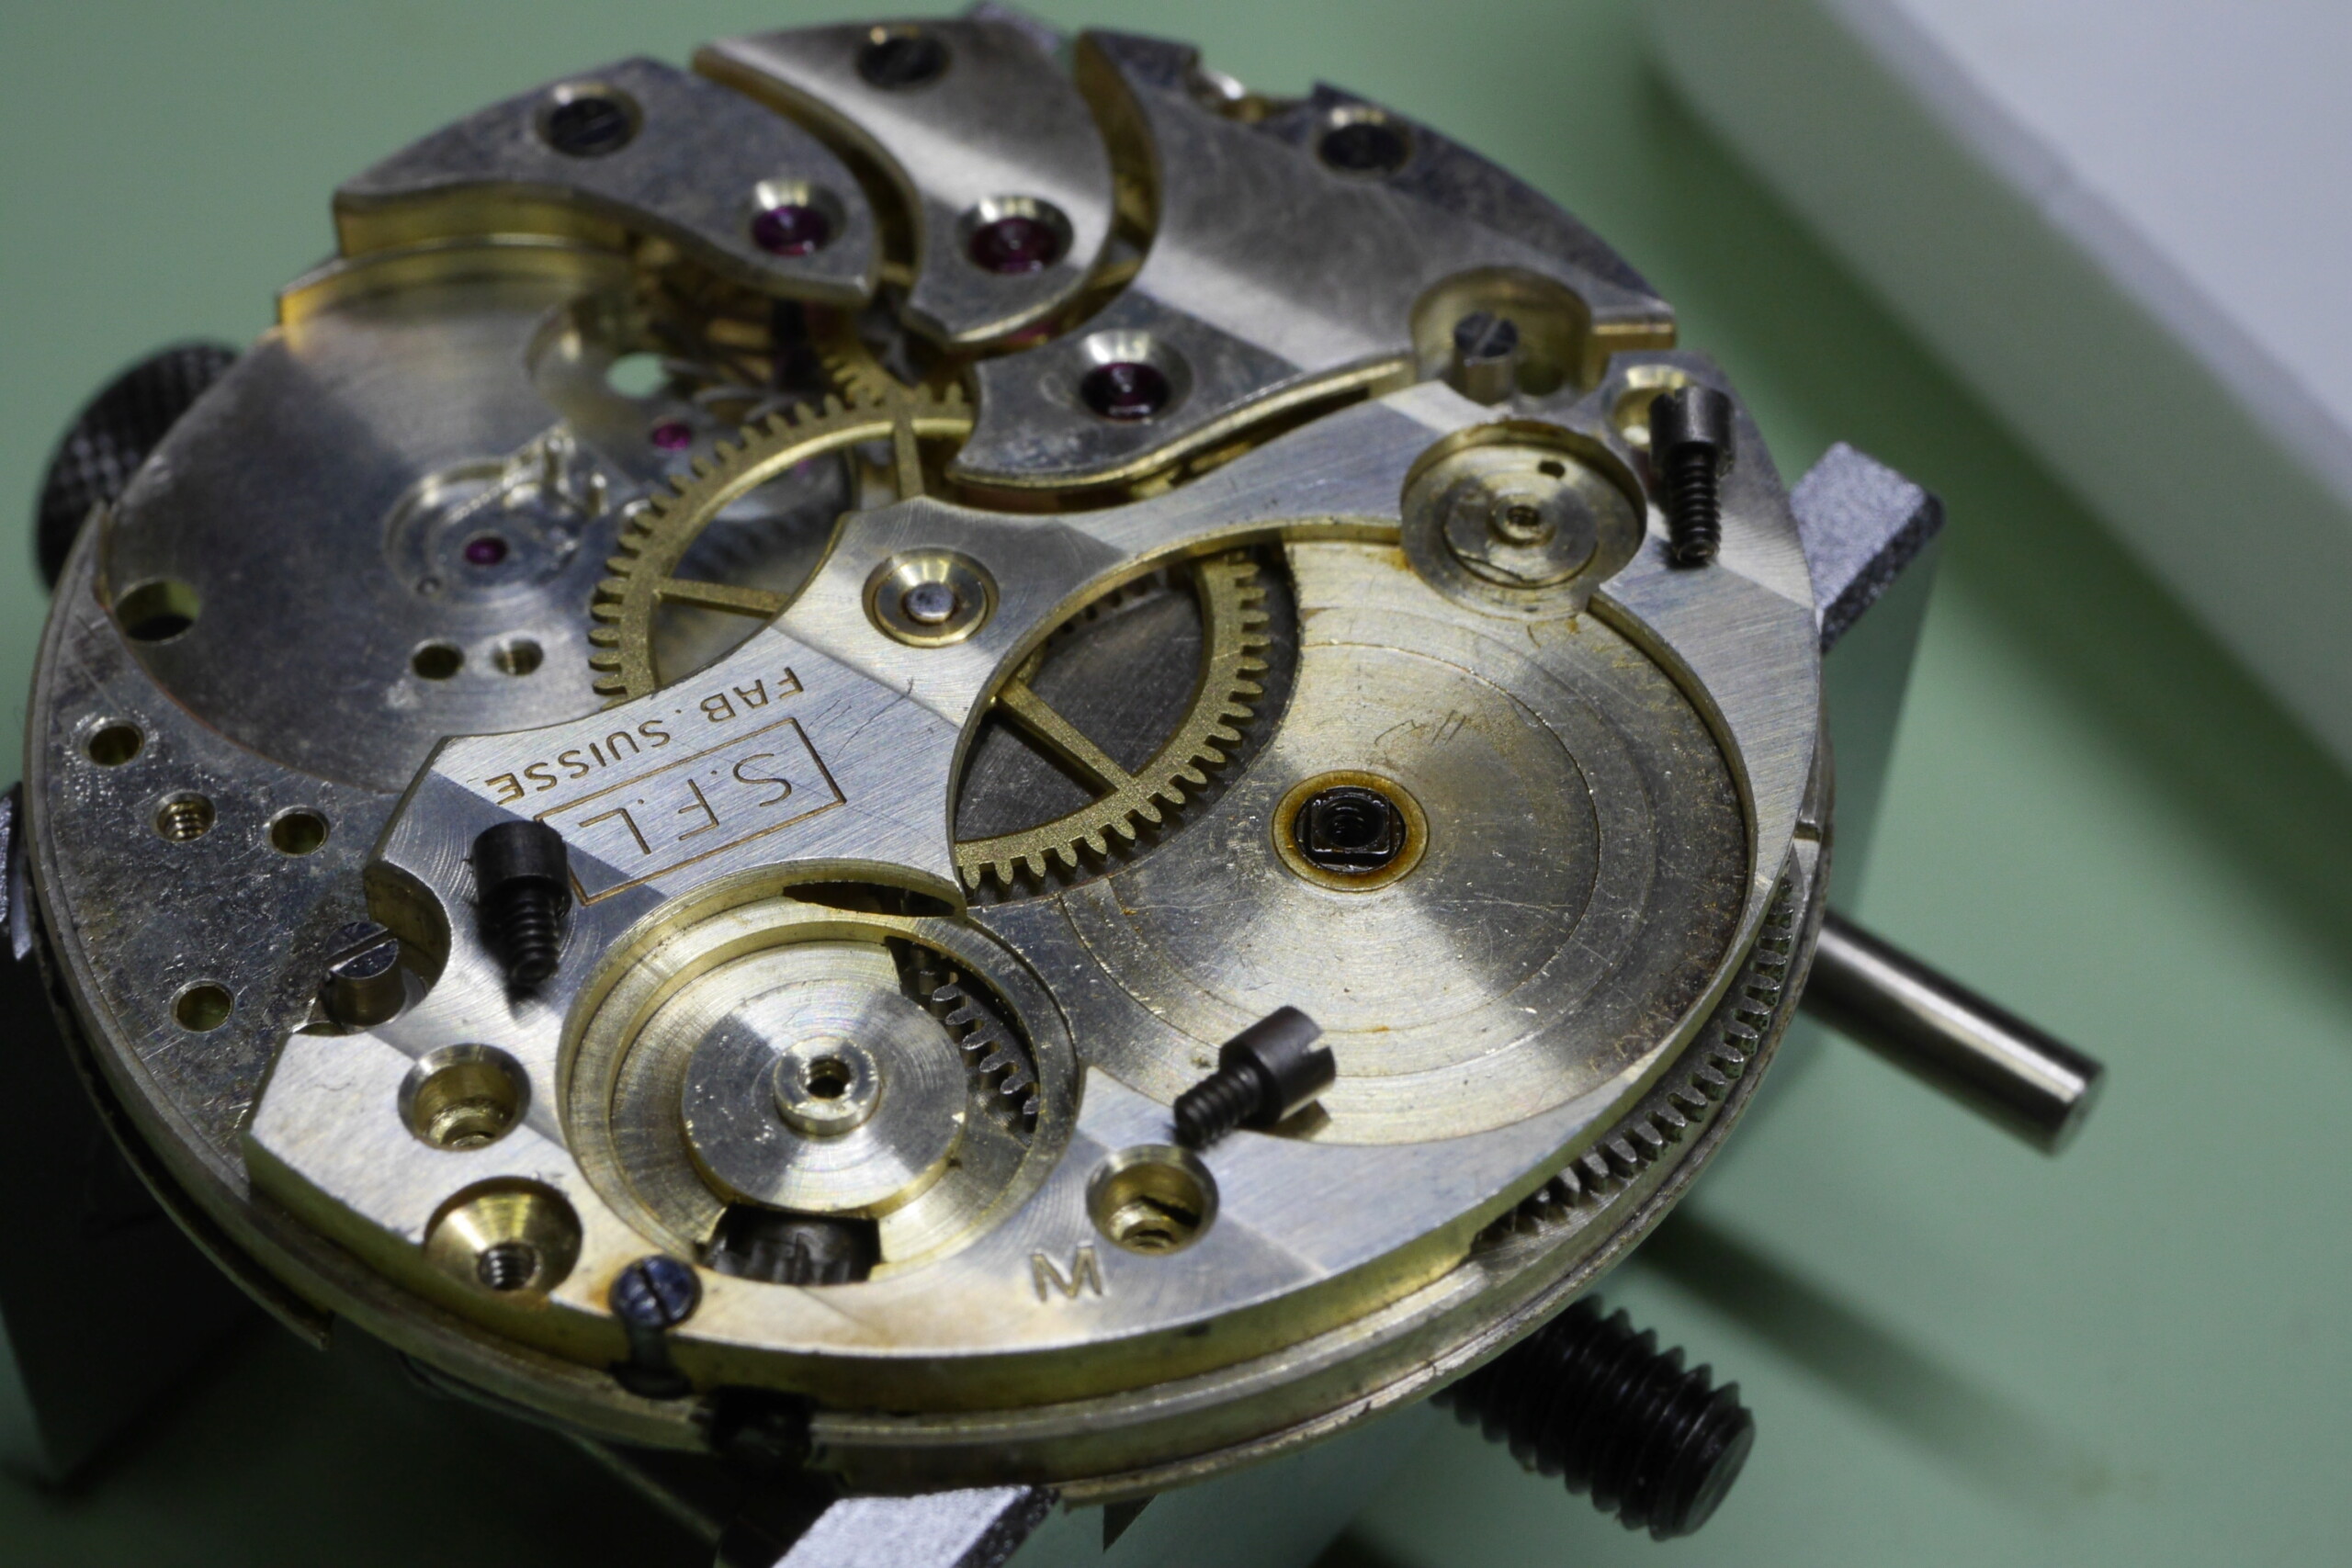 Réparation et entretien d'une montre de poche S.F.L (société française longines) 4210